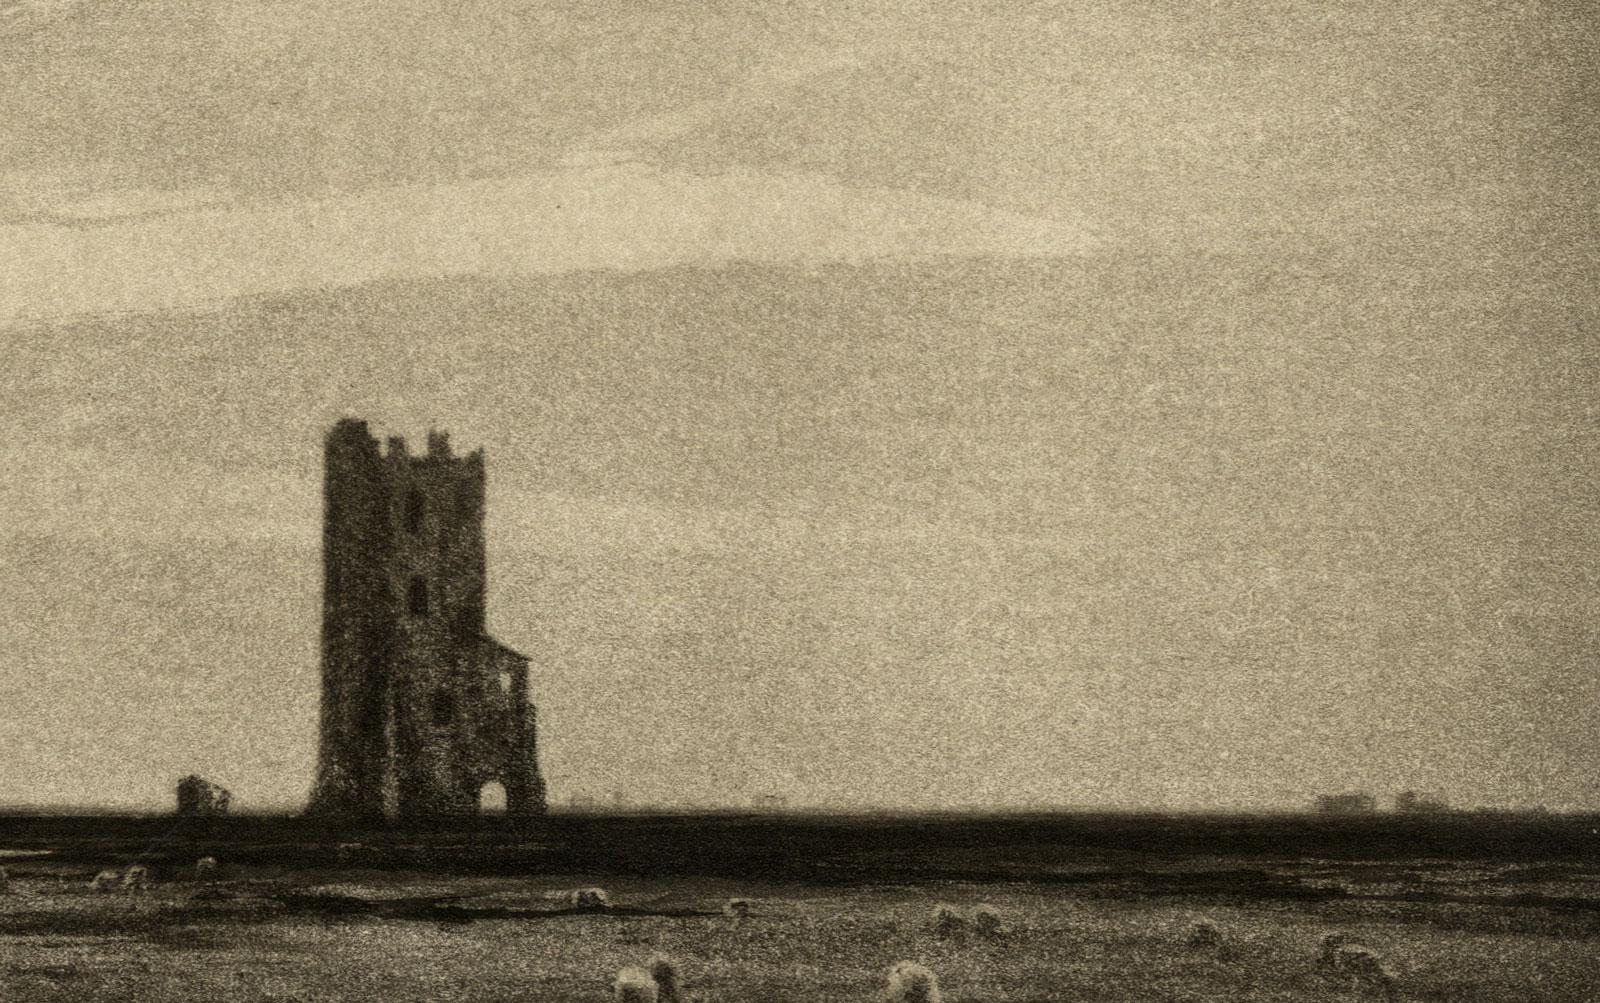 La tour solitaire - Print de Percival Gaskell, R.E.